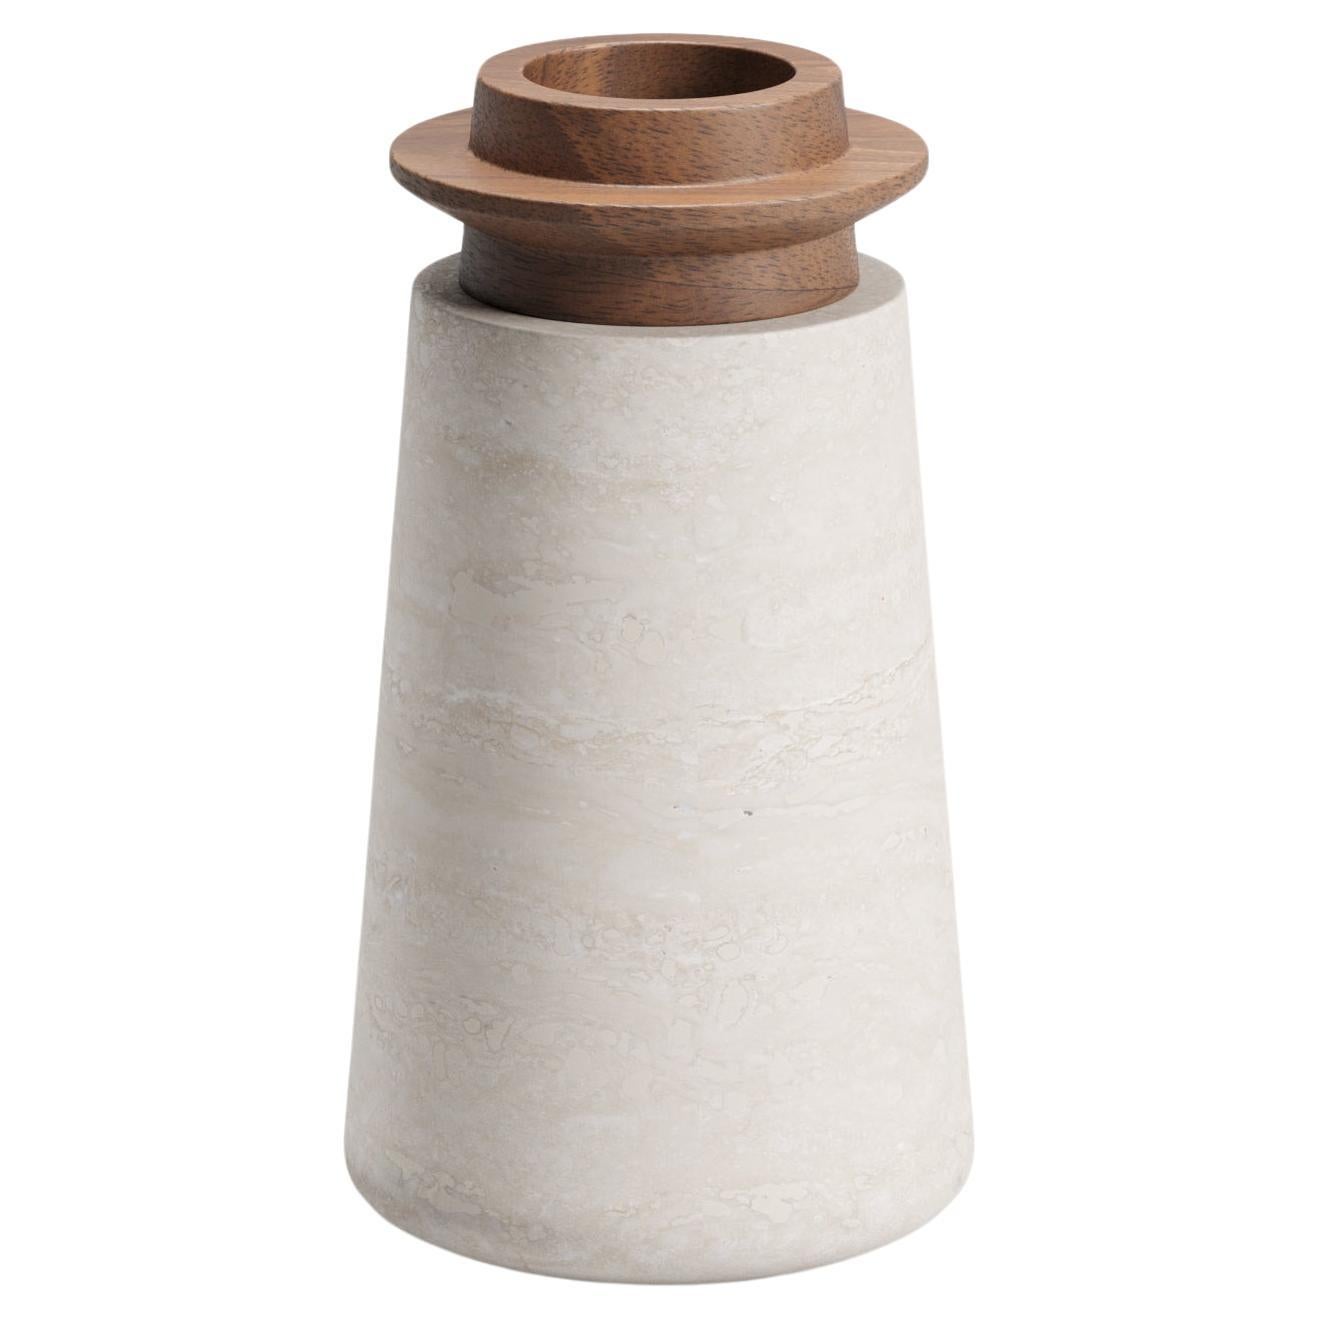 New Modern Vase in Travertine and Walnut, Designer Ivan Colominas